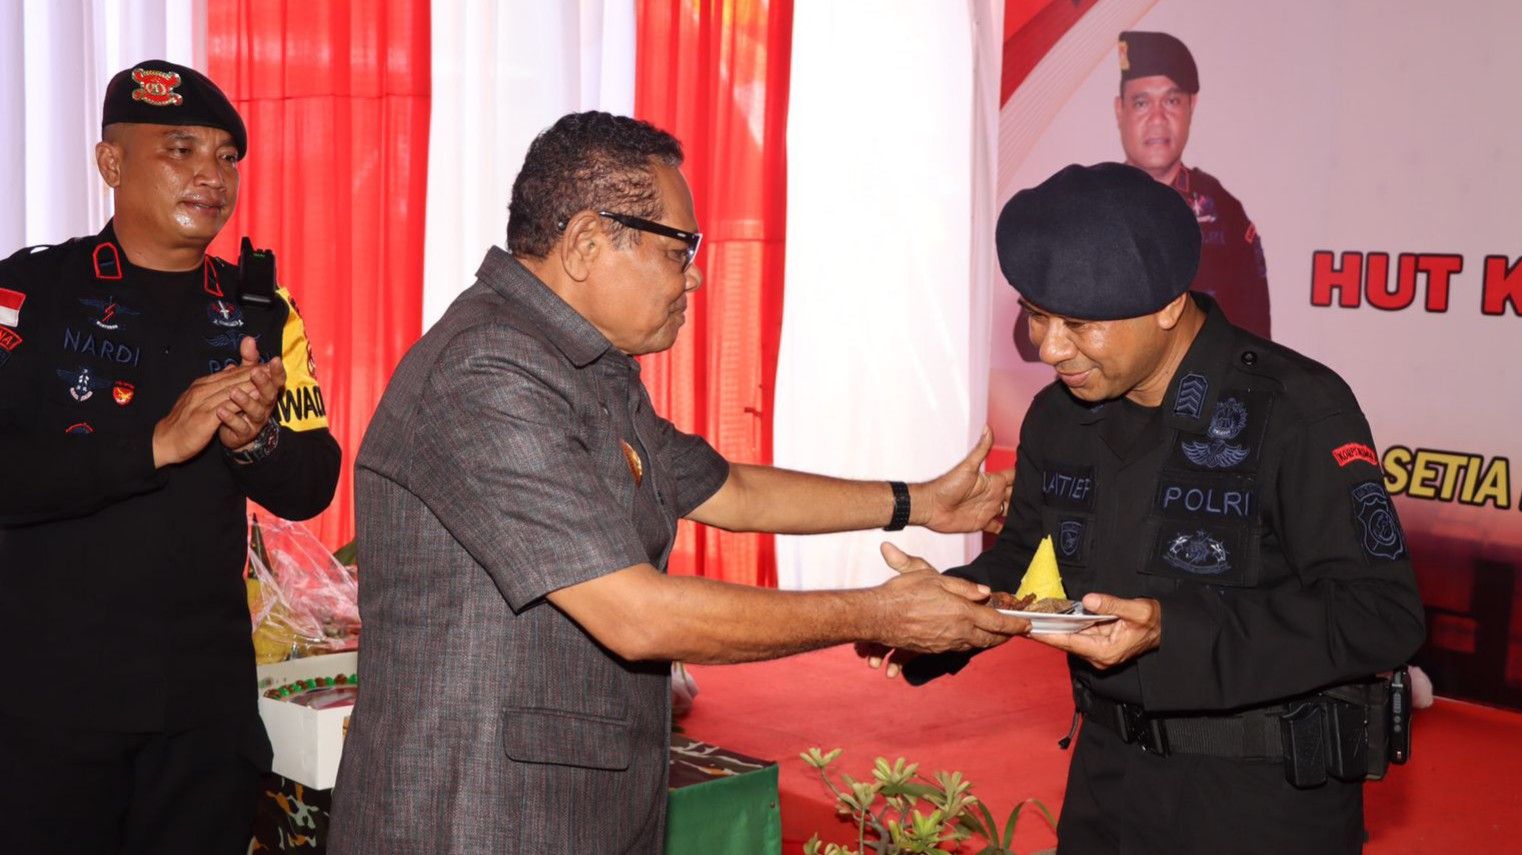 Wakil Bupati Alor, Imran Duru, S.Pd, M.Pd memberikan tumpeng kepada anggota Brimob Tertua dalam perayaan HUT Brimob di Alor di 